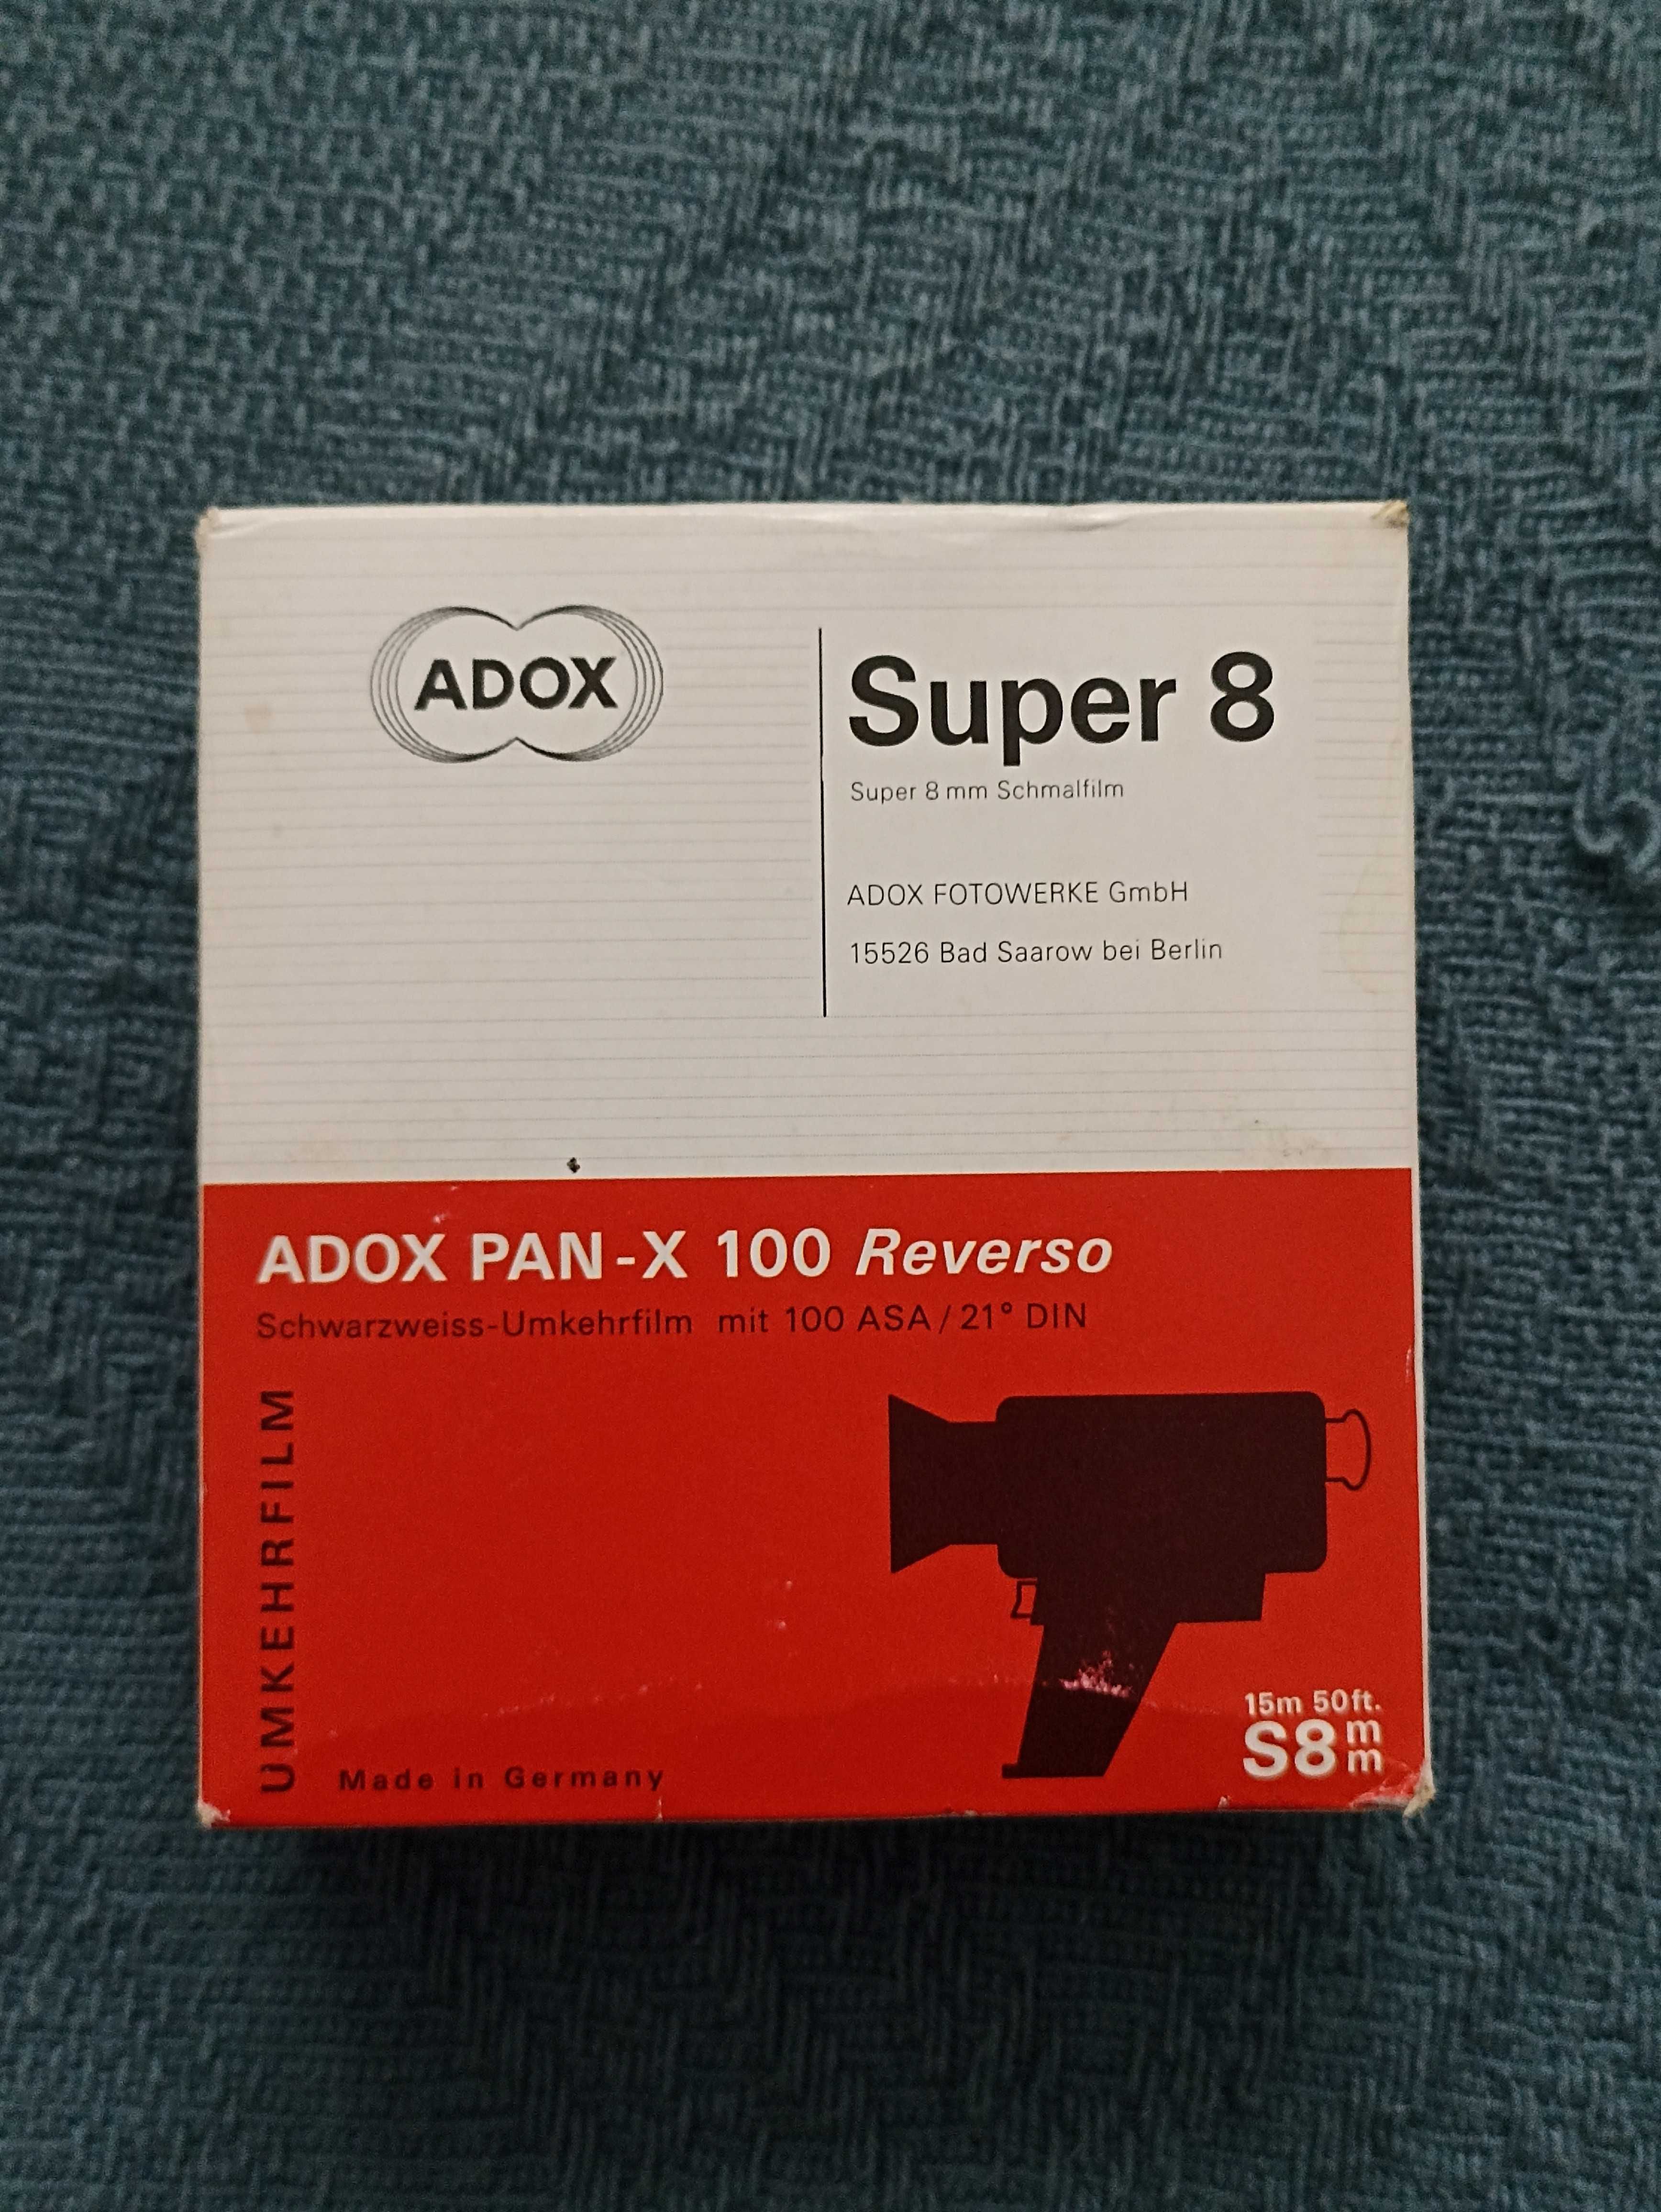 Película SUPER 8 para filmar (Kodak TRI-X B&W, Adox PAN-X Reverso B&W)